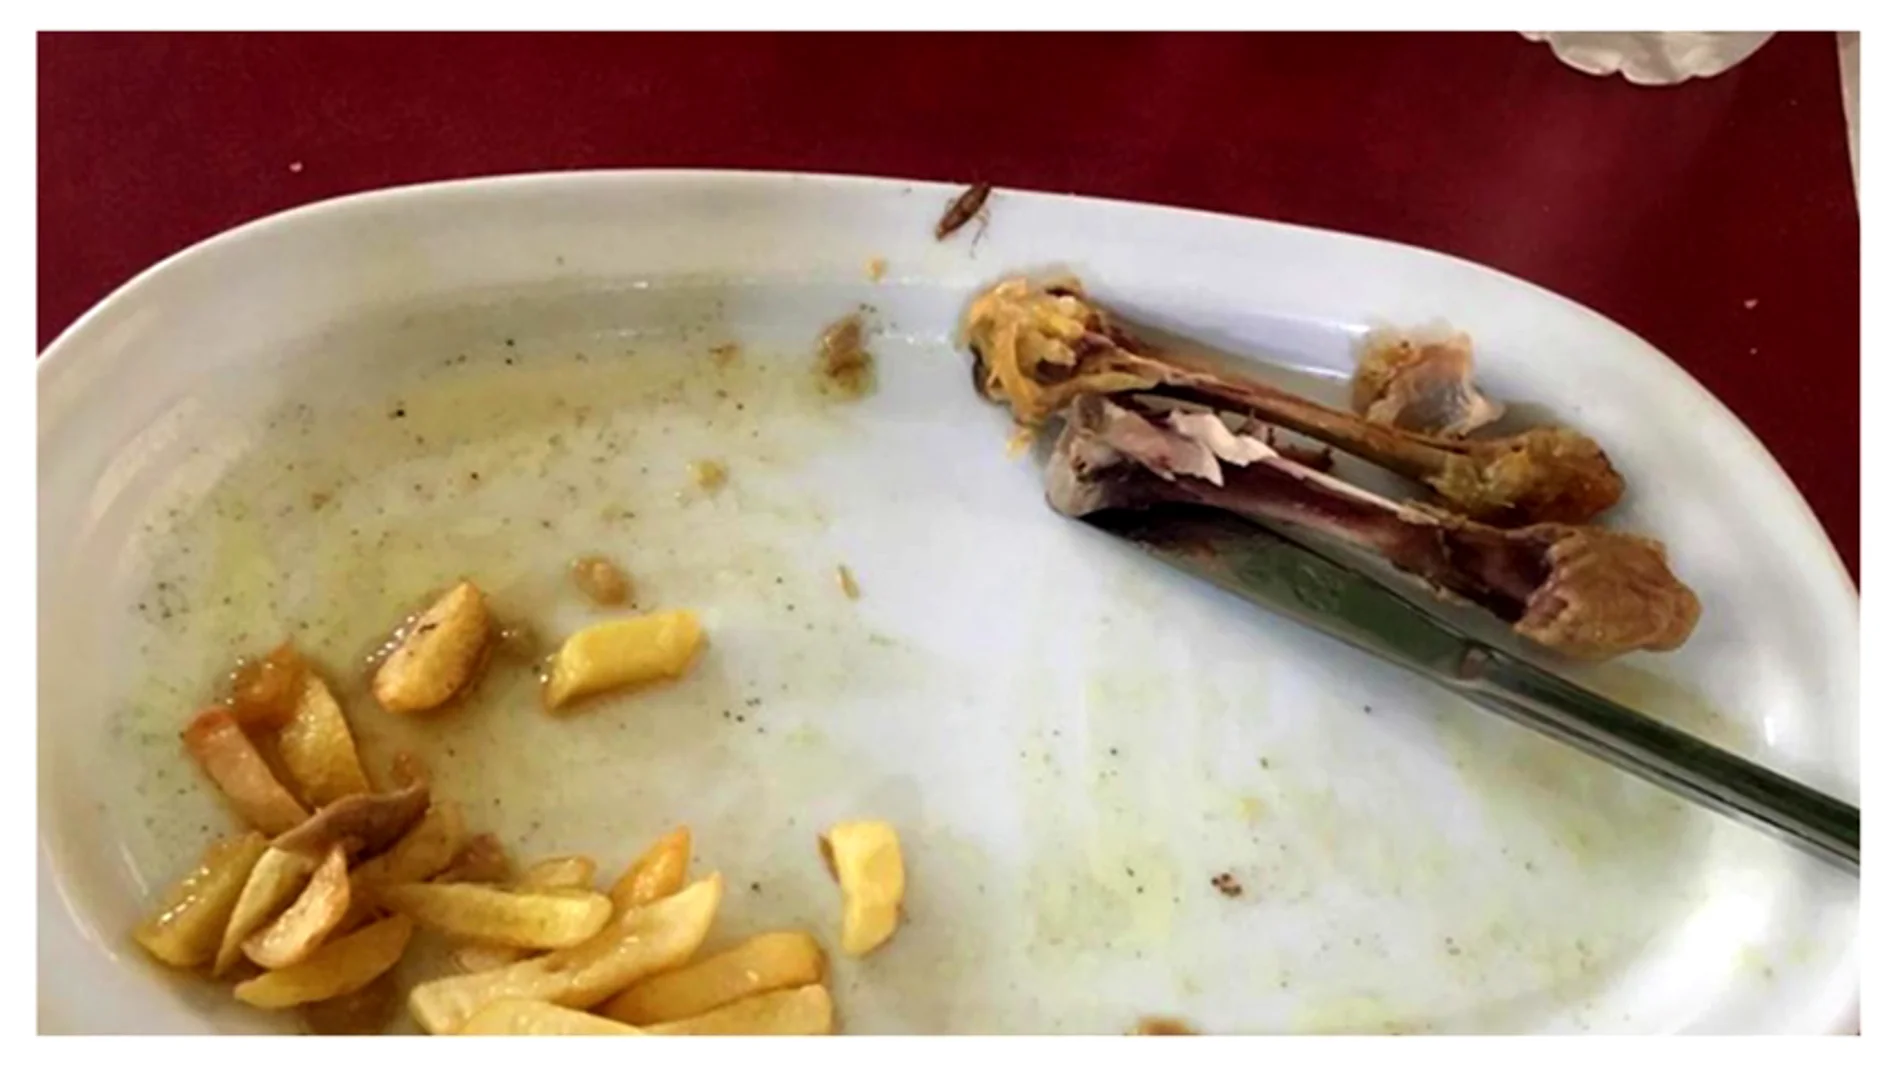 Alberto Chicote ve fotos de la comida en el Ejército: "Hay una cucaracha roja en el plato"